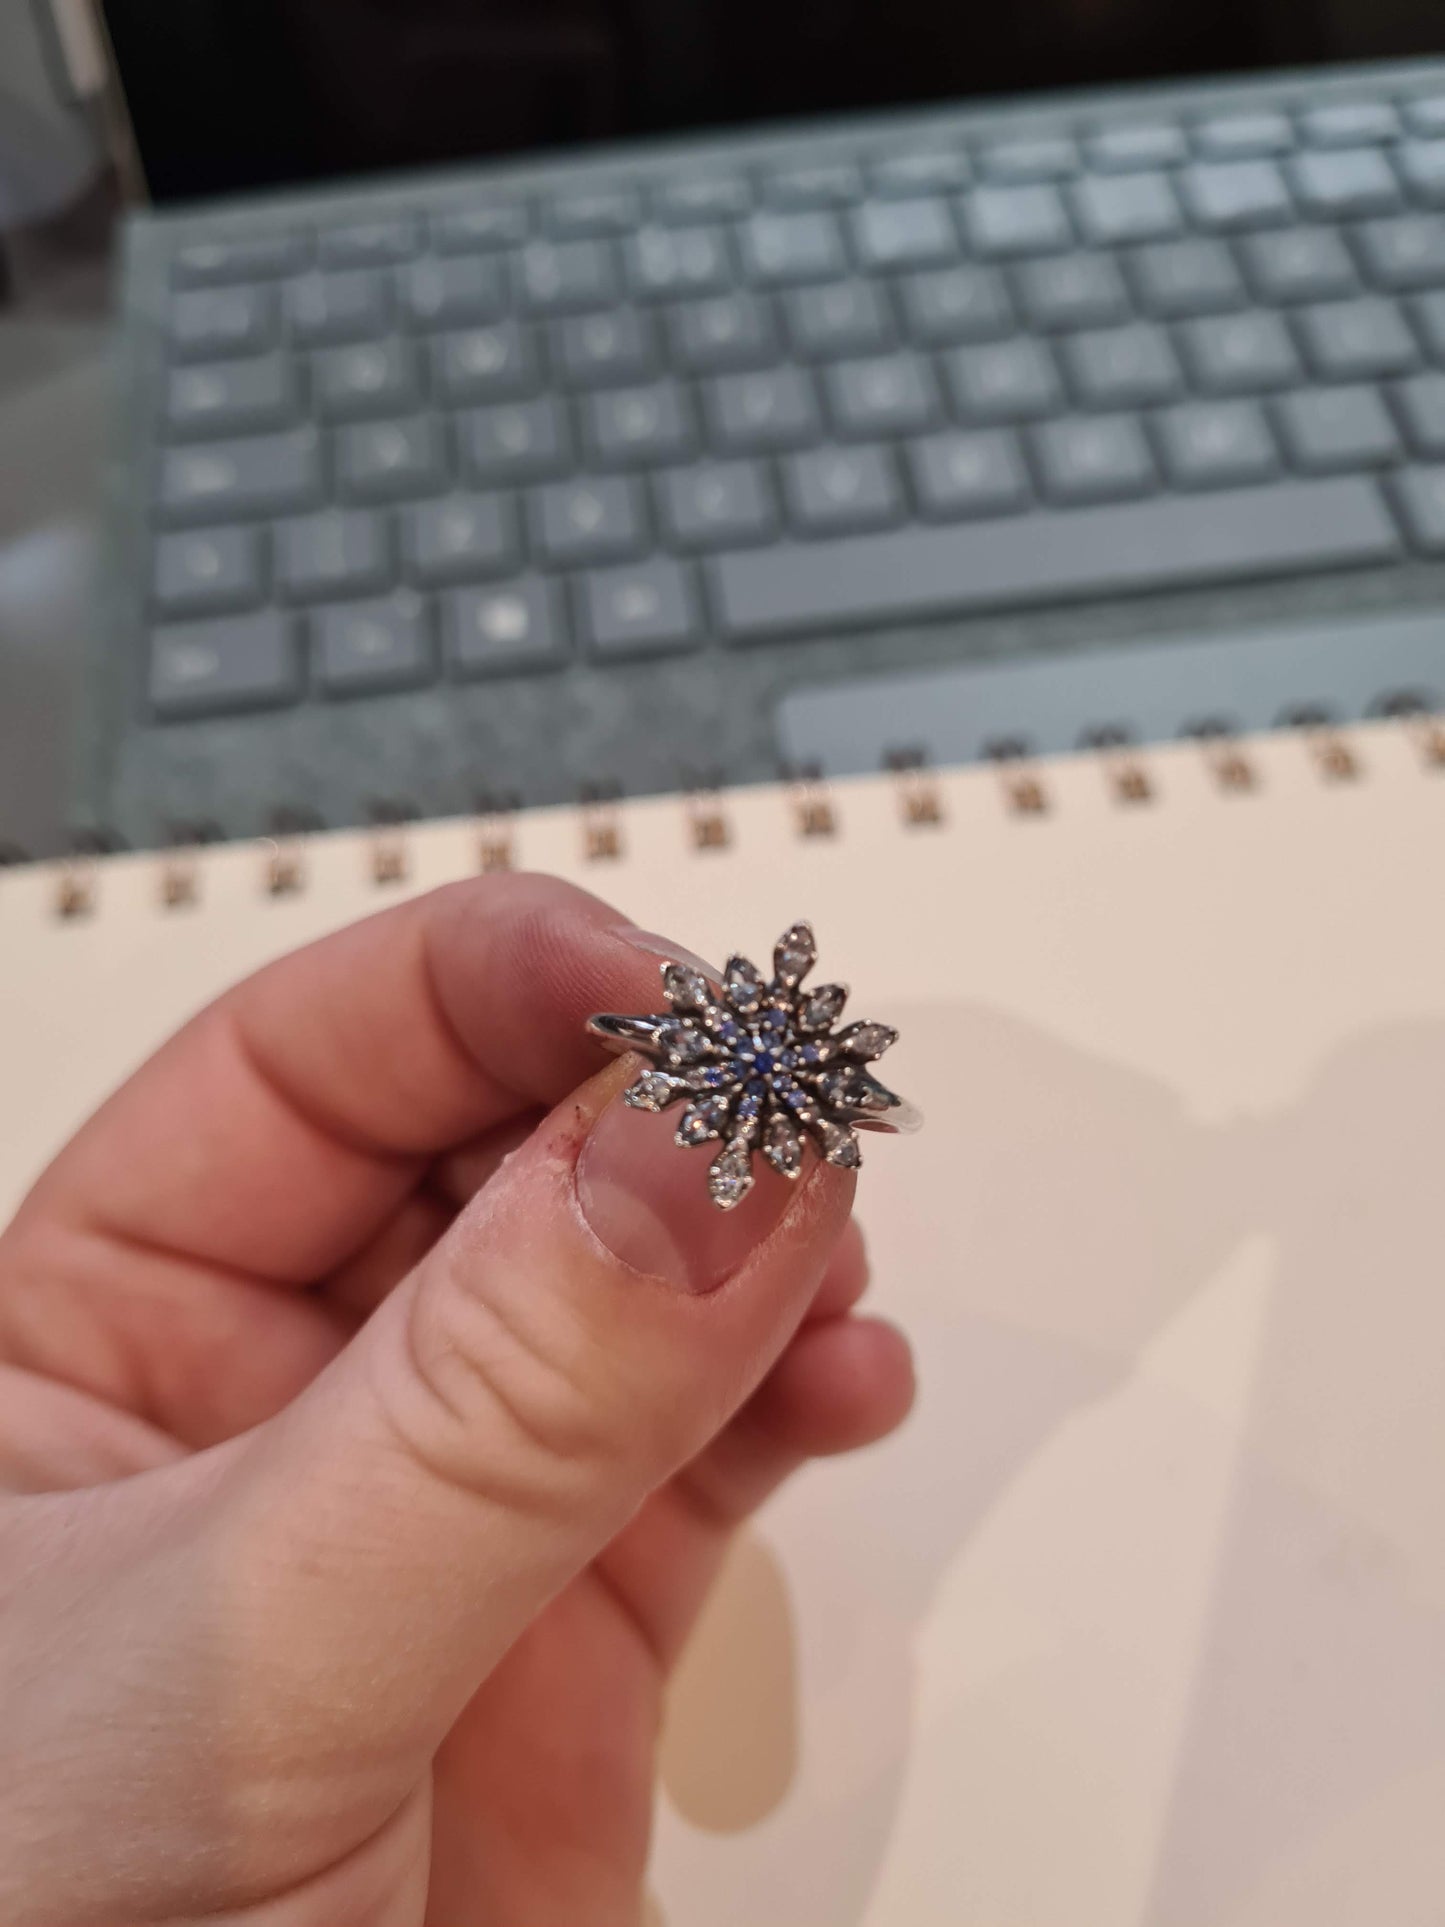 Genuine Pandora Blue Snowflake Christmas Winter Ring Size 56